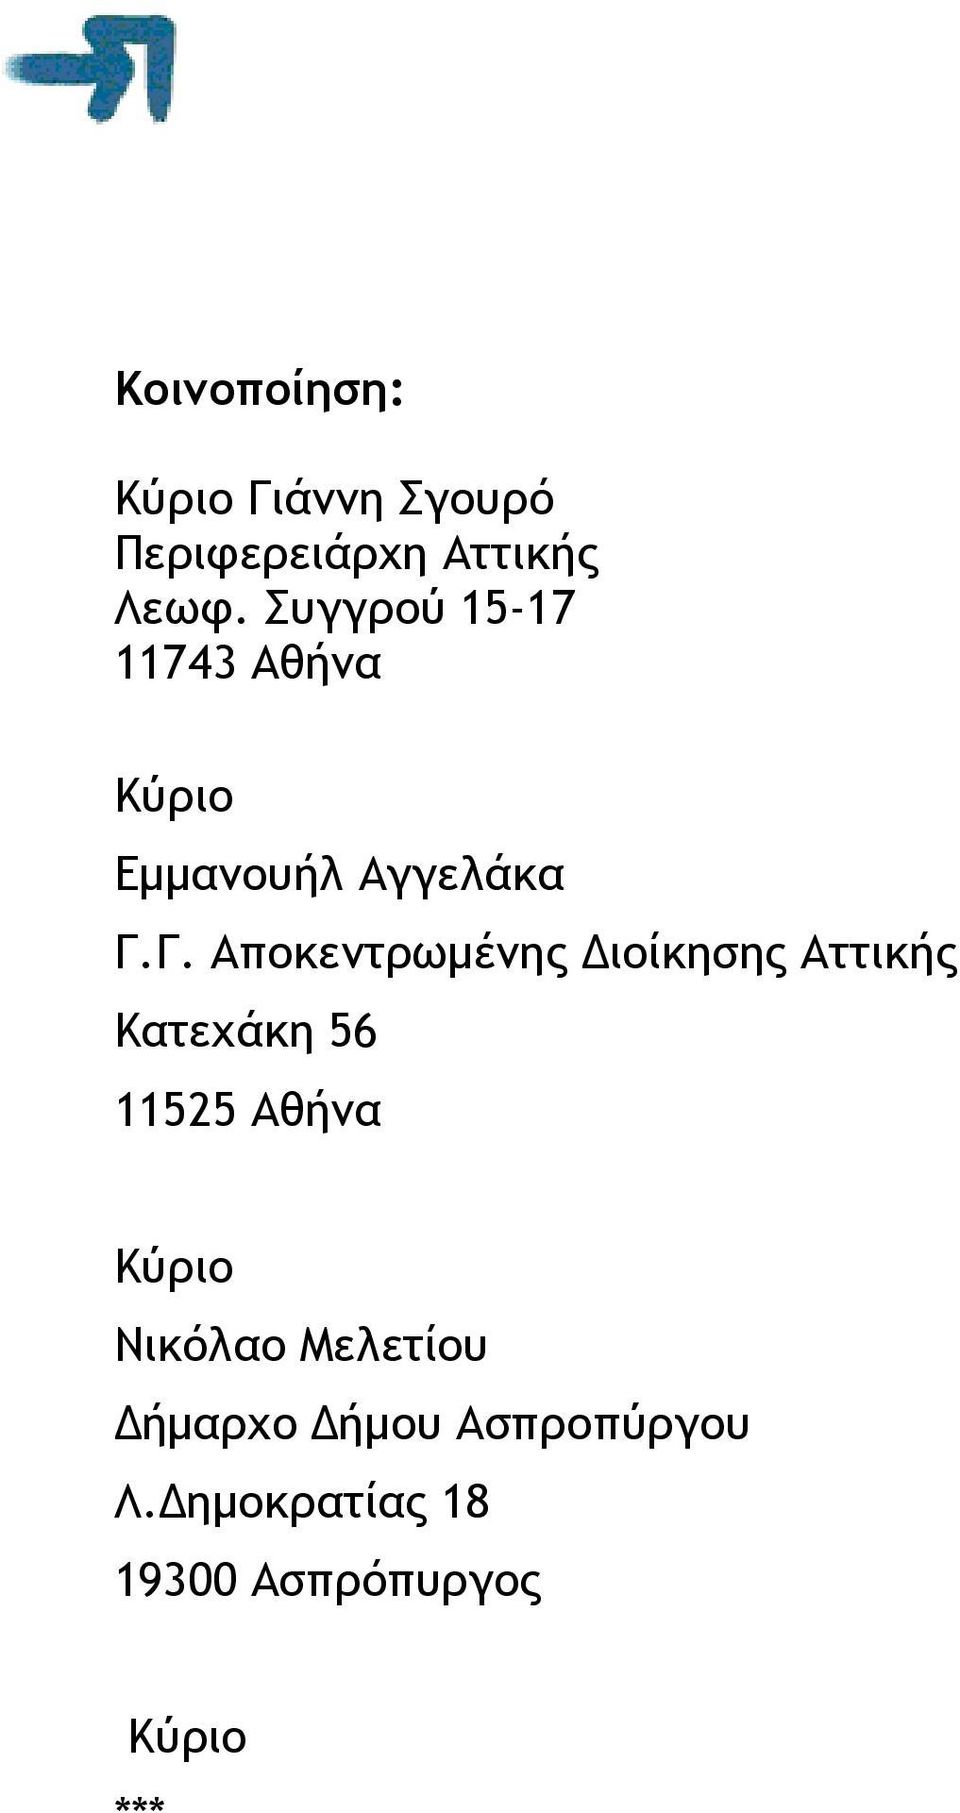 Γ. Αποκεντρωµένης ιοίκησης Αττικής Κατεχάκη 56 11525 Αθήνα Κύριο